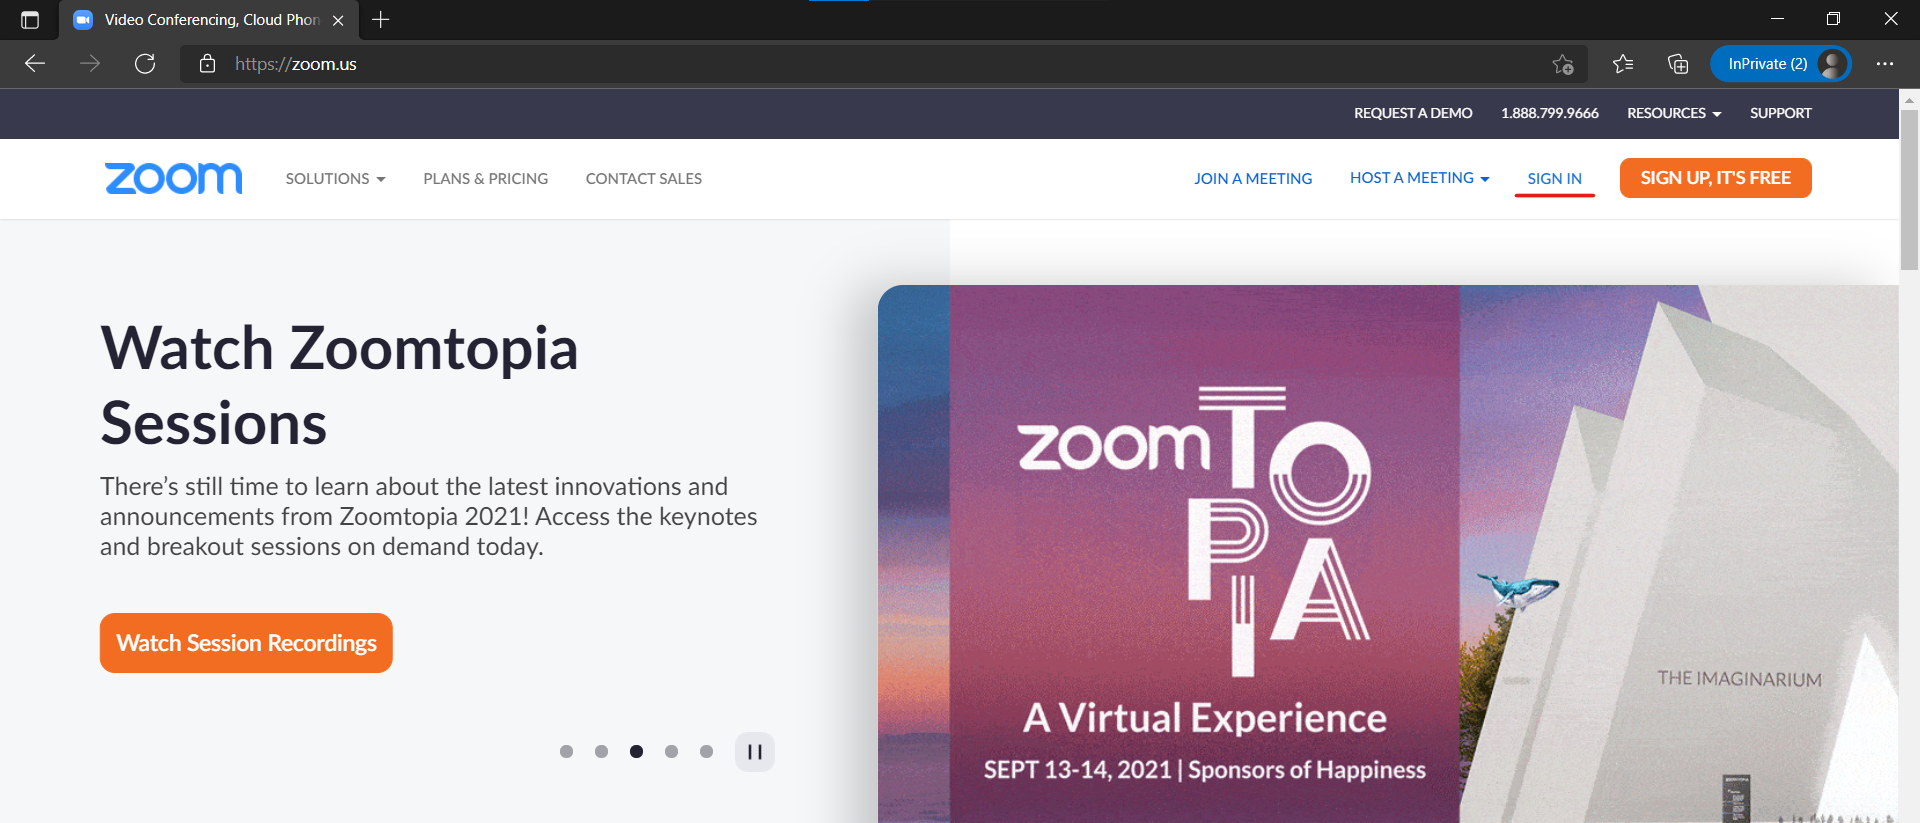 Zoom website.